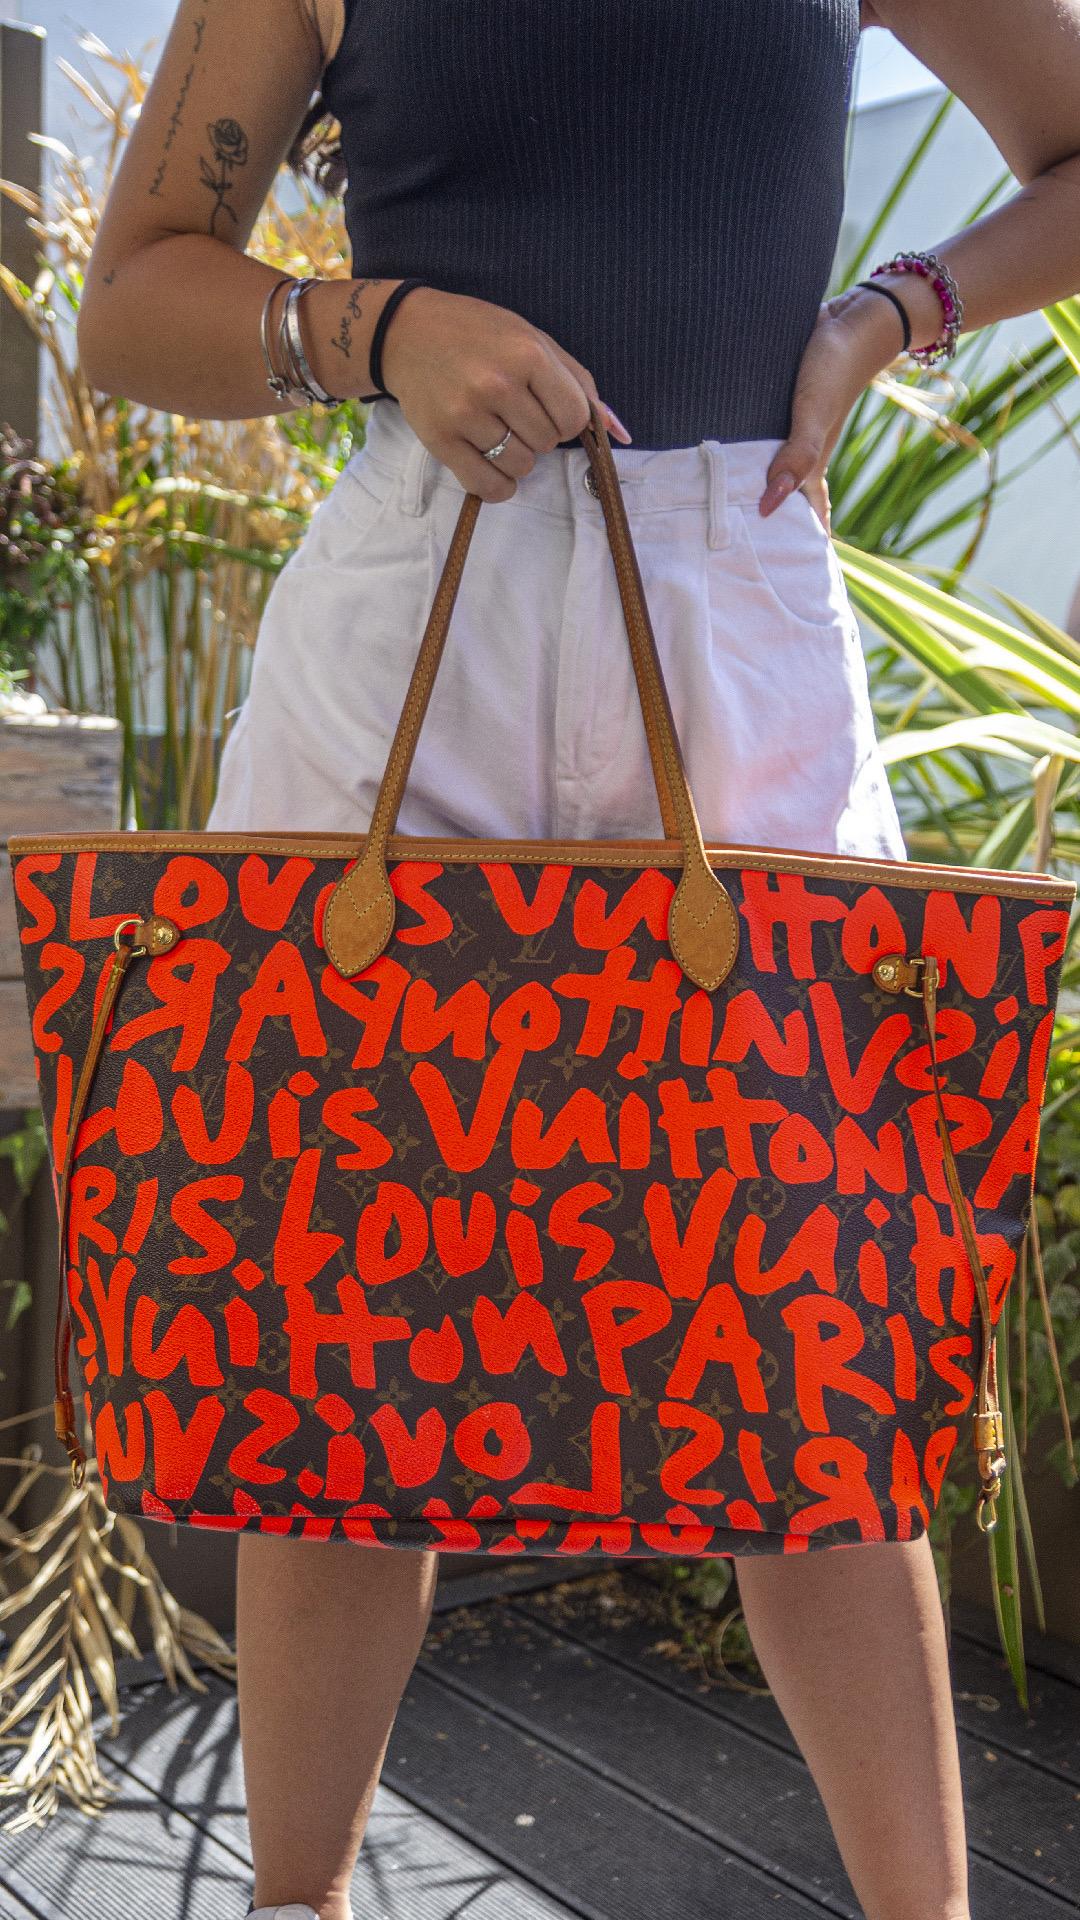 Borsa firmata Louis Vuitton, modello Neverfull, misura GM, in edizione limitata in collaborazione con Stephen Sprouse, realizzata in tela marrone nella classica fantasia monogram con graffiti color arancio fluo, inserti in vacchetta e hardware